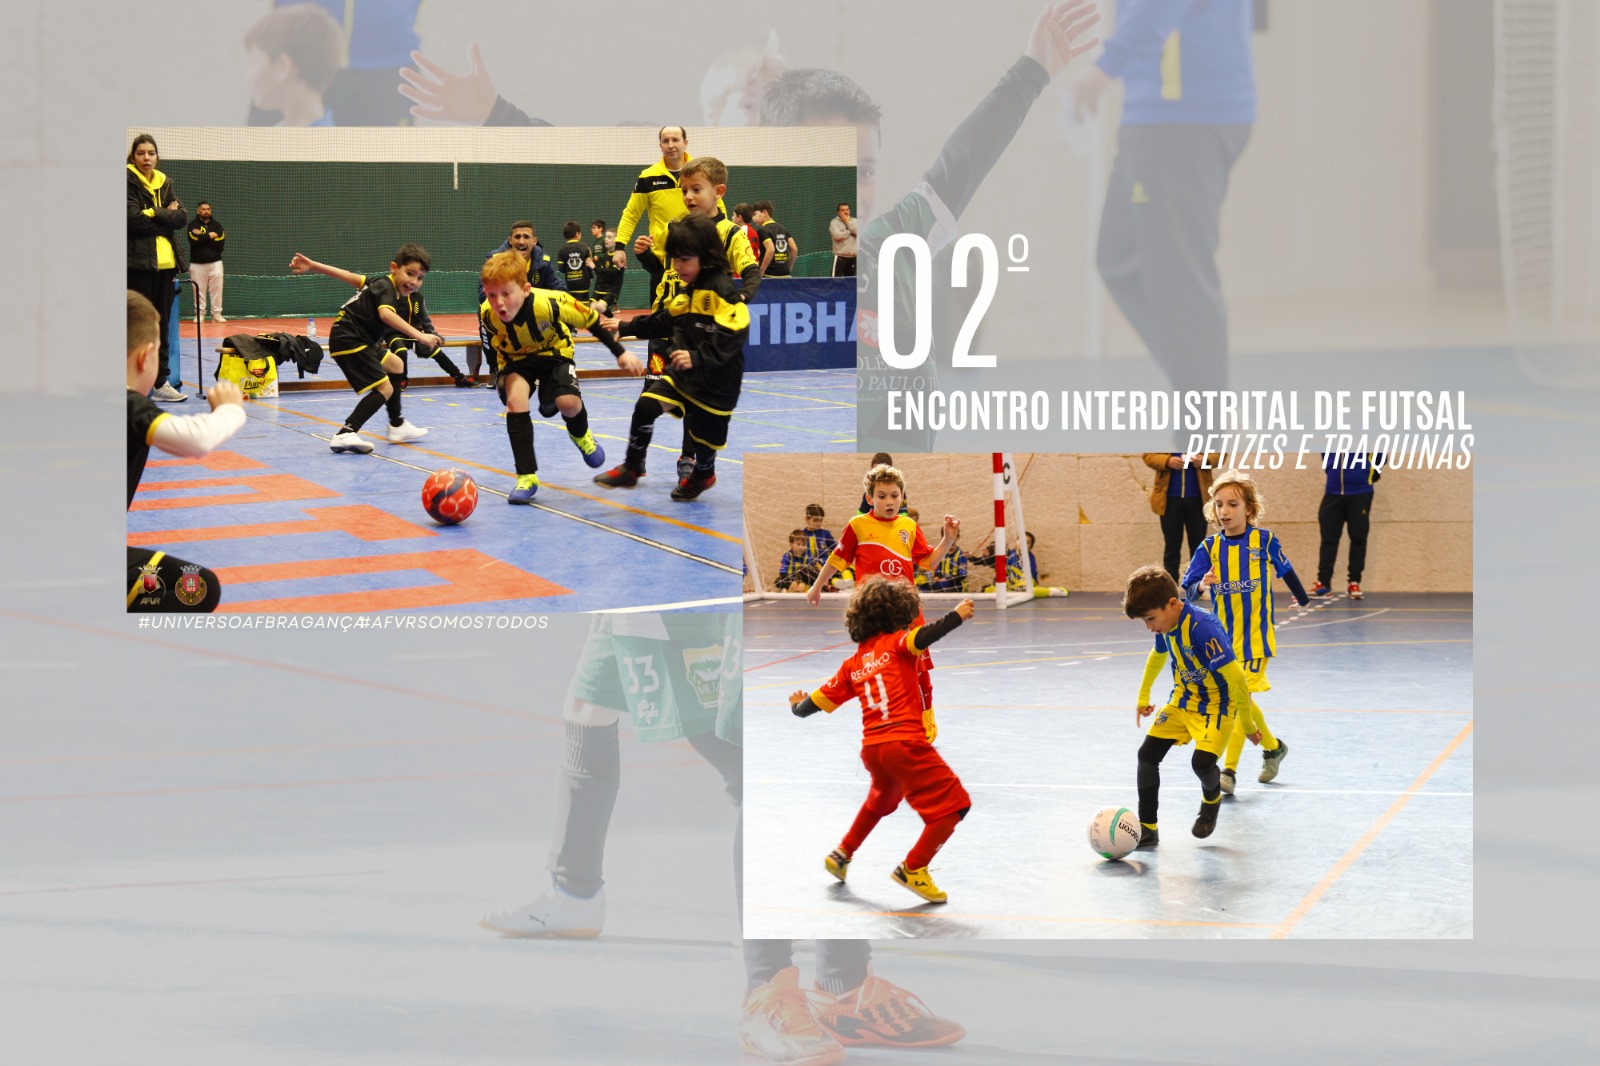 Encontro Interdistrital de Futsal de Petizes e Traquinas com cerca de meio milhar de crianças 